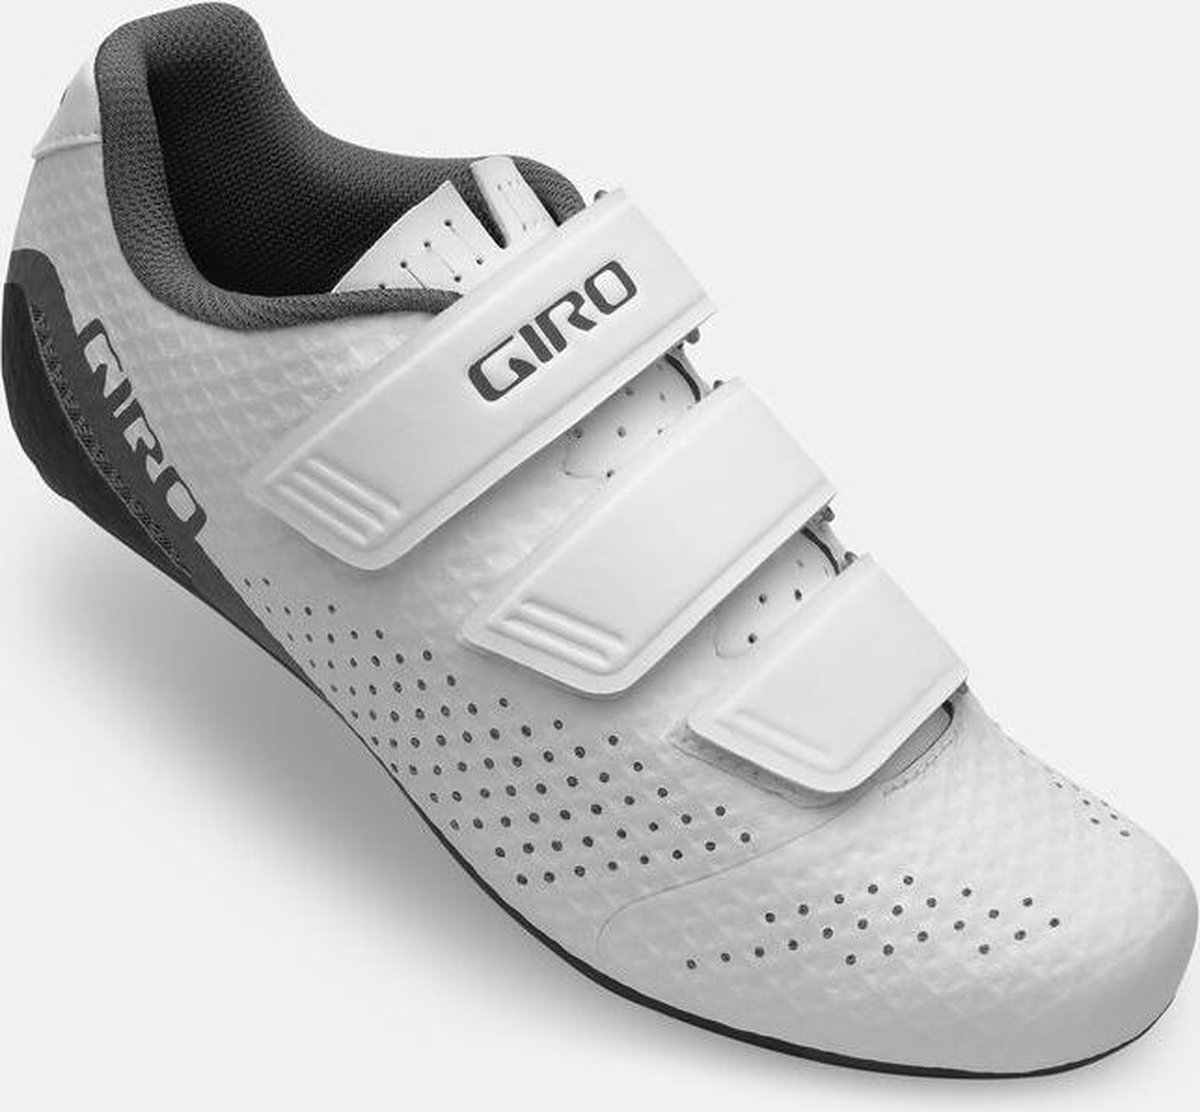 Giro Race Fietsschoenen Stylus Woman White/Grey 38